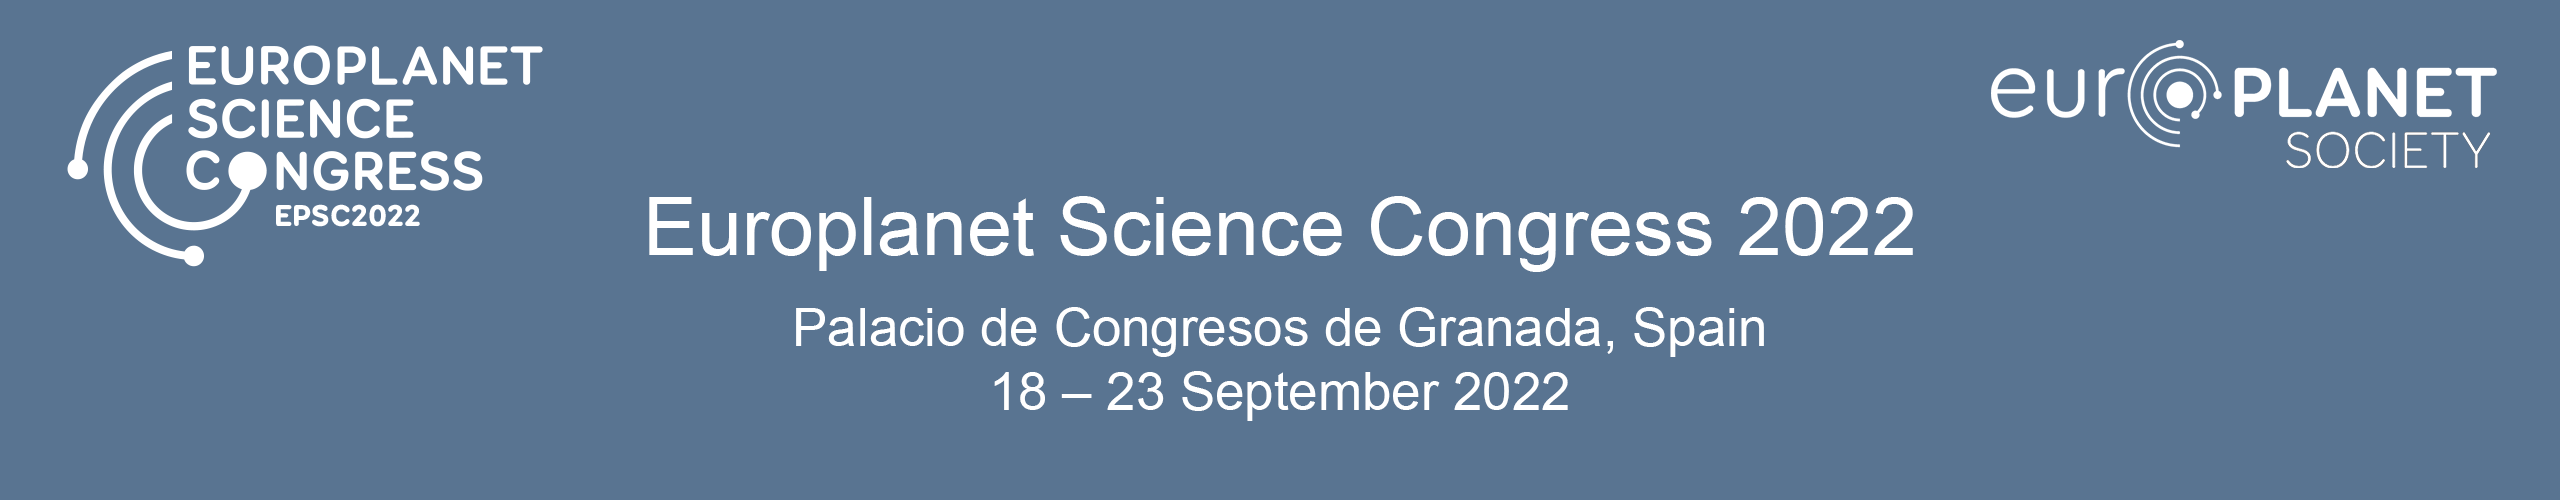 EPSC2022-conference-banner (2)